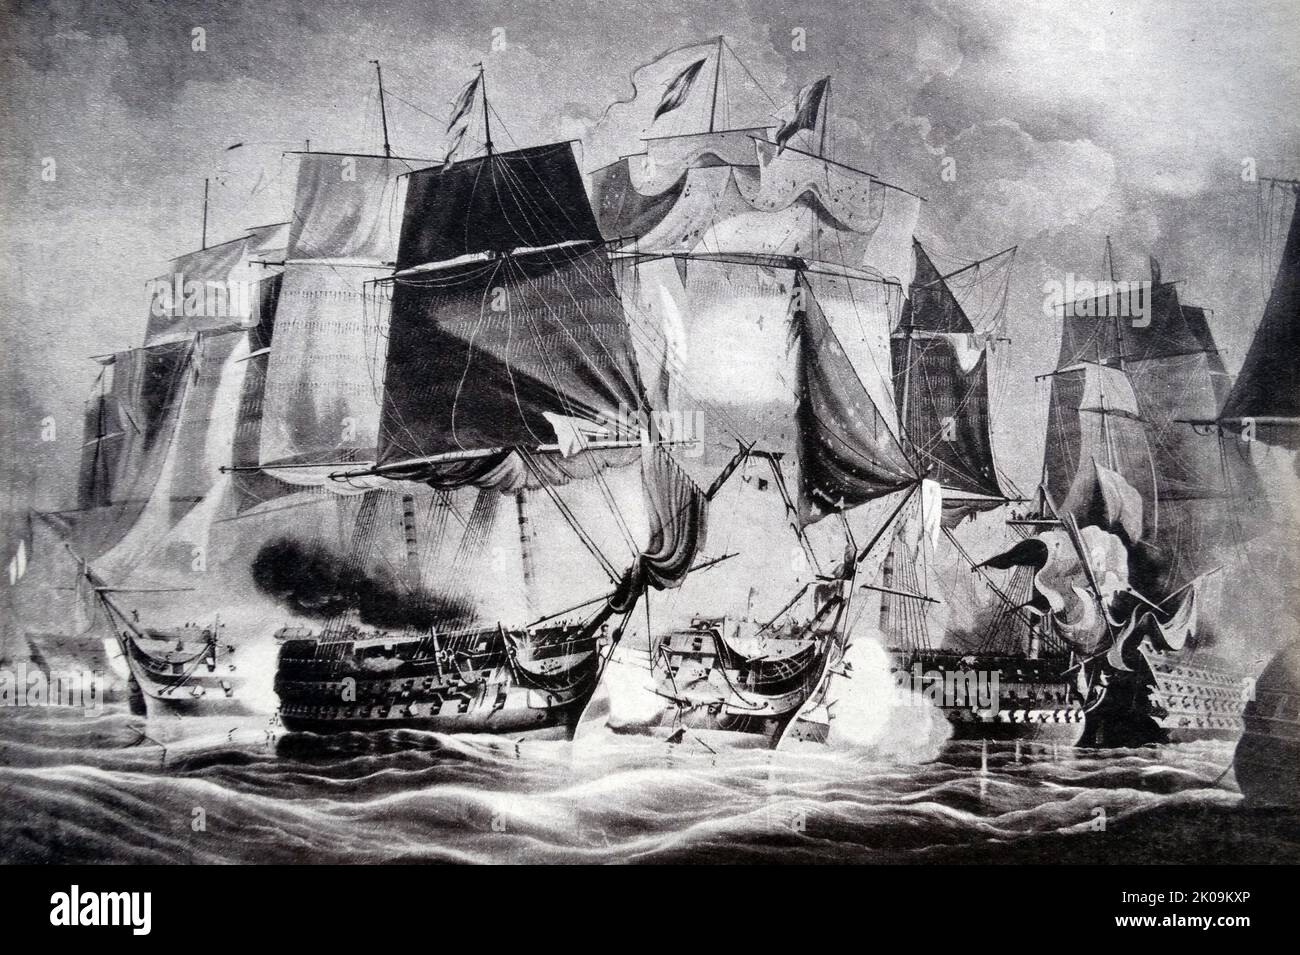 La bataille de Trafalgar (21 octobre 1805) fut un engagement naval entre la Royal Navy britannique et les flottes combinées des marines française et espagnole pendant la guerre de la troisième Coalition (août-décembre 1805) des guerres napoléoniennes (1803-1815). Dessin. Dans le cadre des projets de Napoléon d'envahir l'Angleterre, les flottes françaises et espagnoles se sont combinées pour prendre le contrôle de la Manche, mais elles ont rencontré la flotte britannique sous l'amiral Lord Nelson. La bataille féroce qui a suivi a entraîné la perte de 22 navires alliés, alors que les Britanniques n'en ont perdu aucun. Banque D'Images